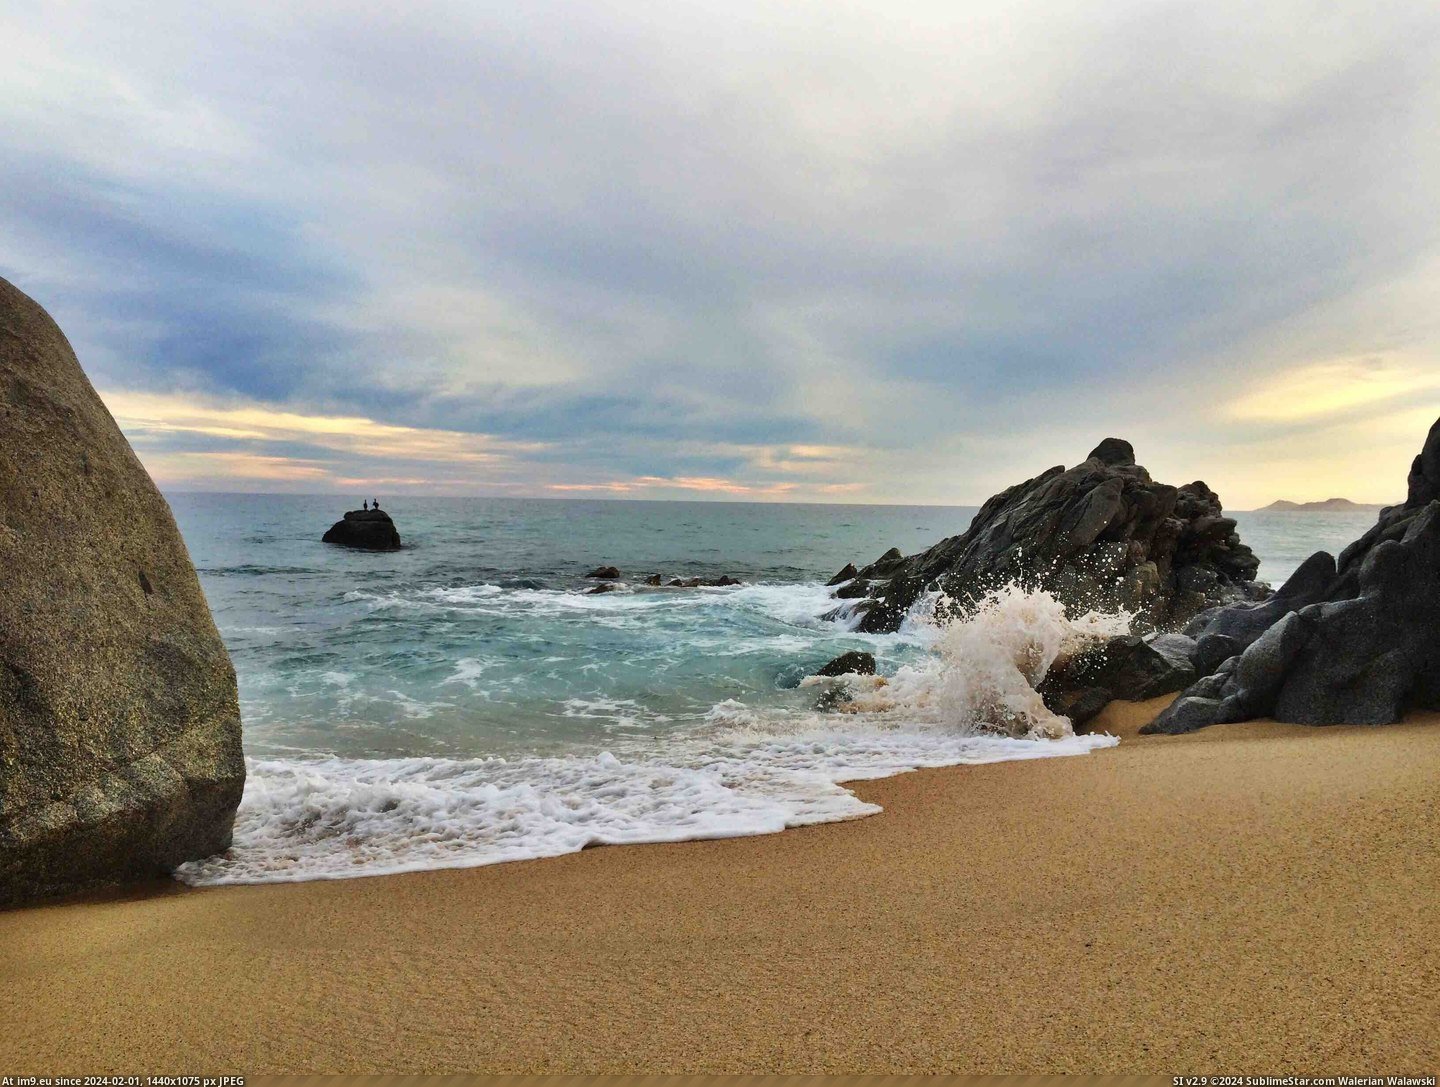 #Beach #San #Mexico #Remote #3264x2448 #Del [Earthporn] Remote beach outside of San José del Cabo, Mexico. [3264x2448] Pic. (Bild von album My r/EARTHPORN favs))